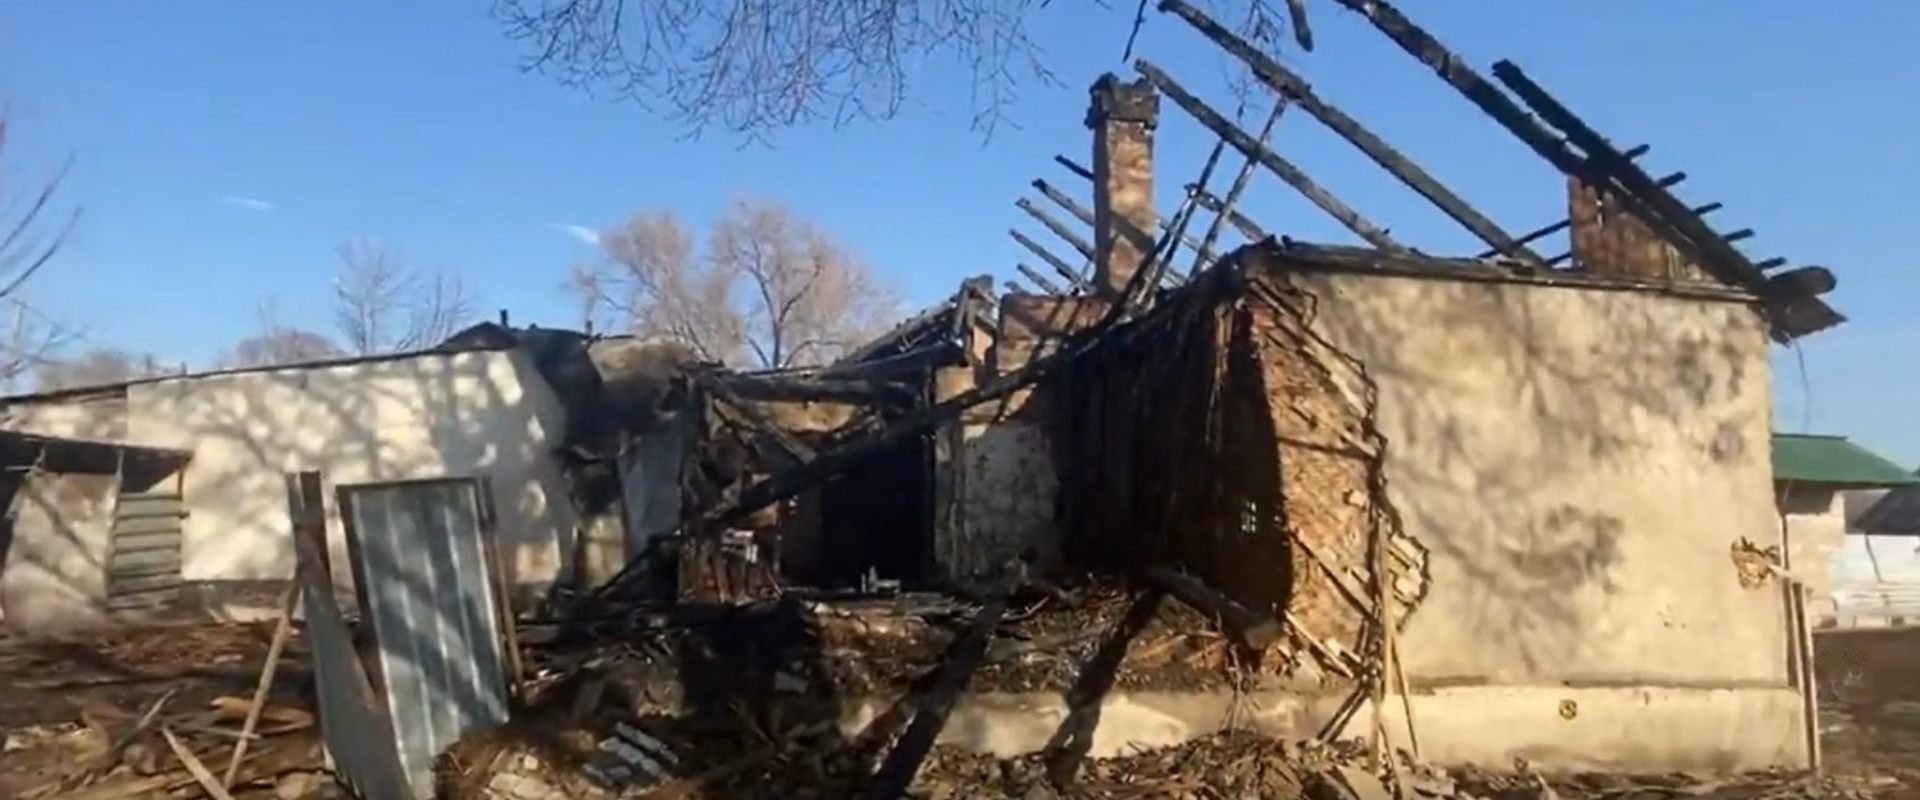 В барачном доме в селе Тонкерис Талгарского района сгорело 6 квартир